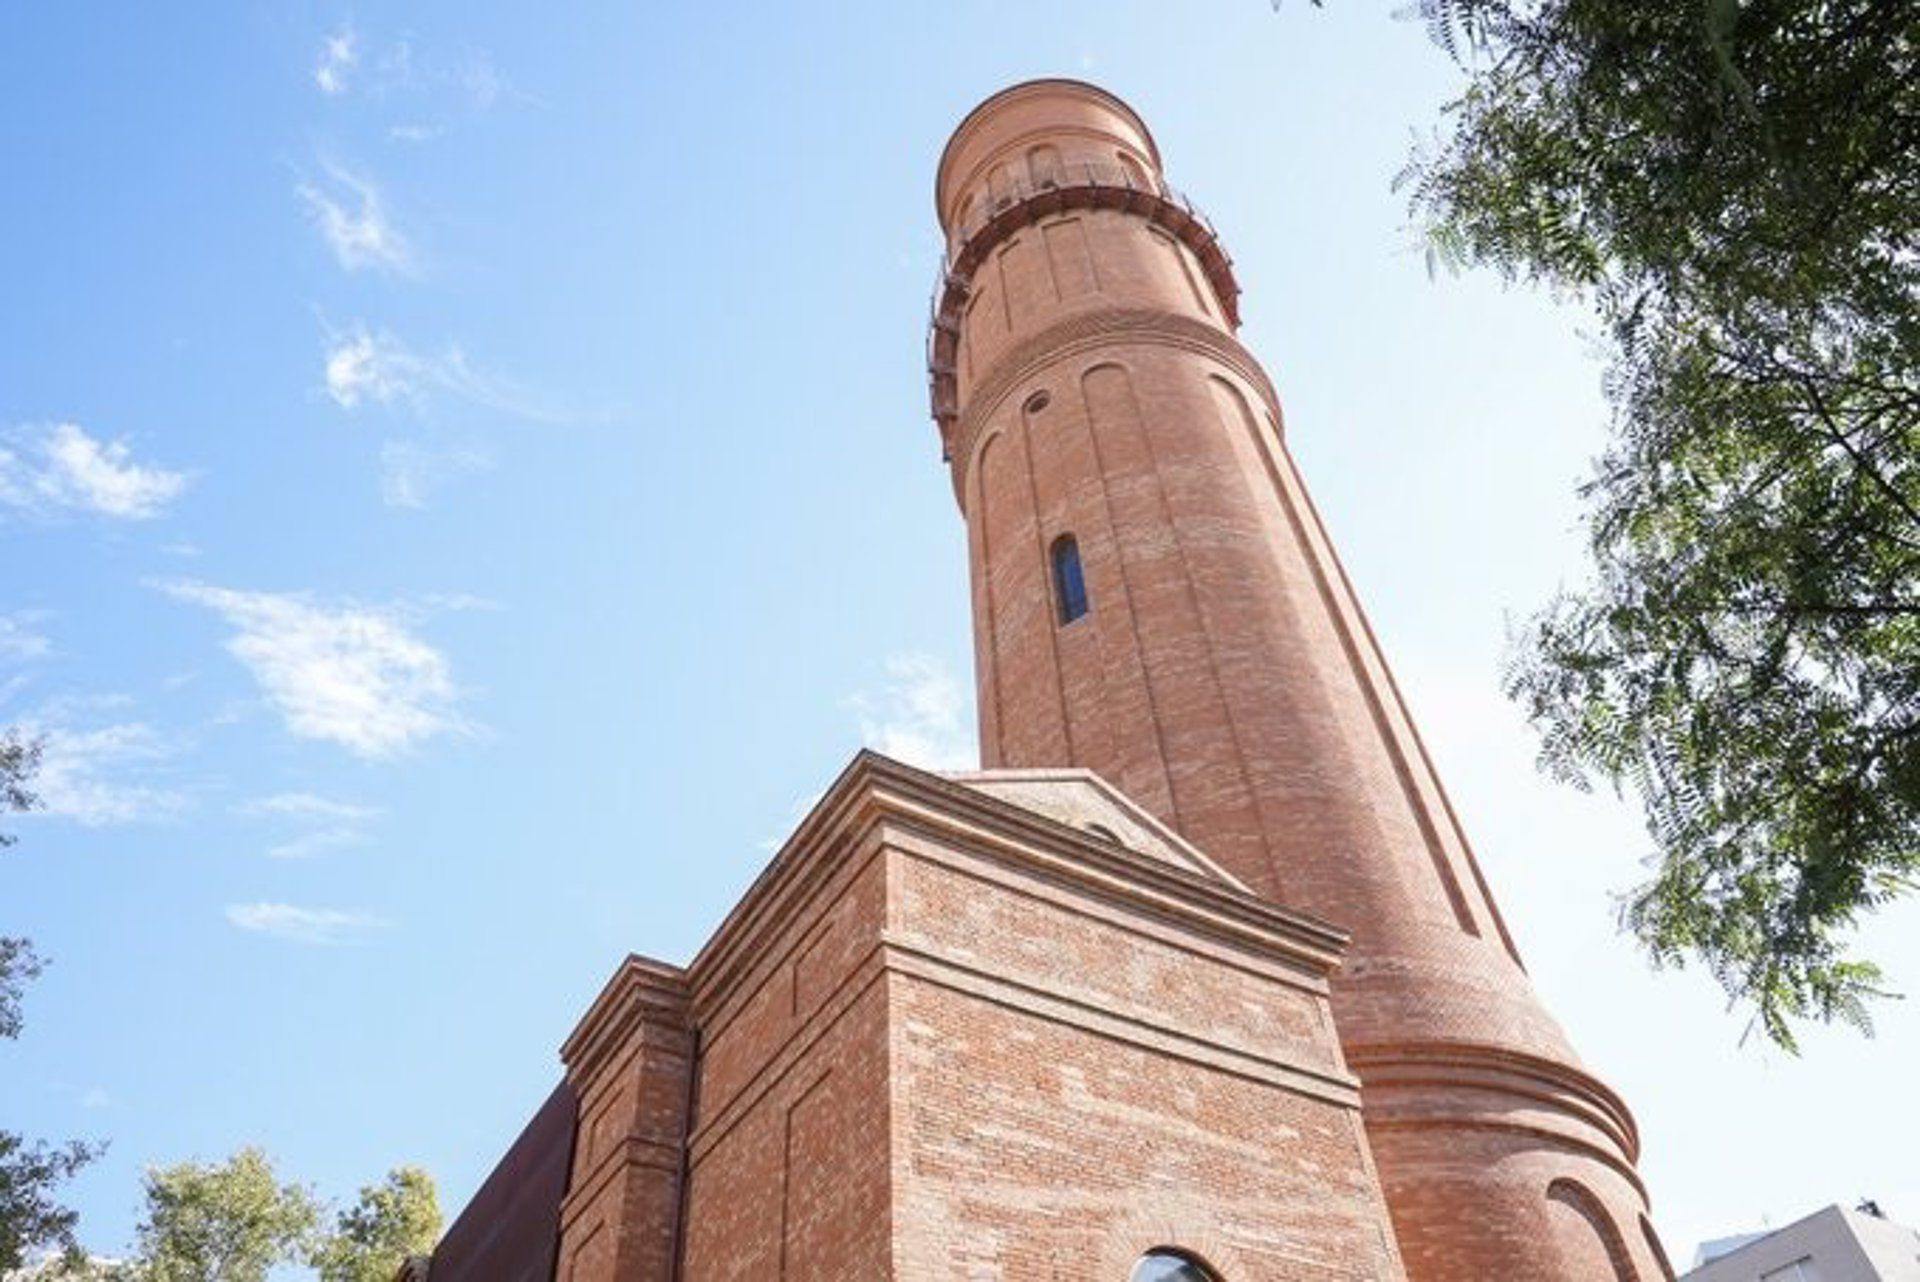  La Torre de les Aigües, una parte de la memoria industrial de la ciudad / AYUNTAMIENTO DE BARCELONA